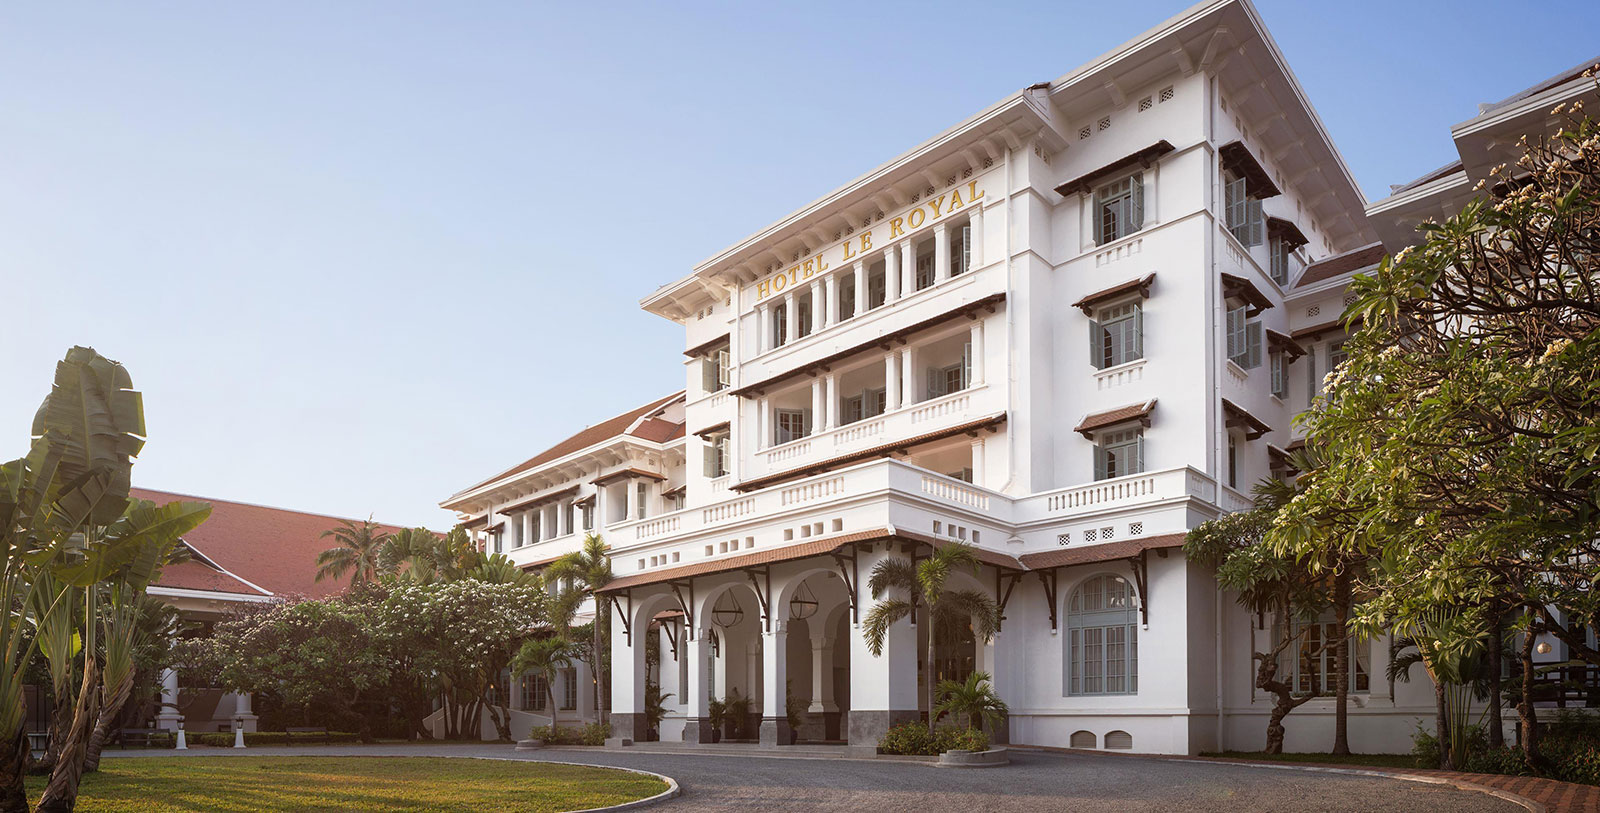 Découvrez l'architecture coloniale de Phnom Penh